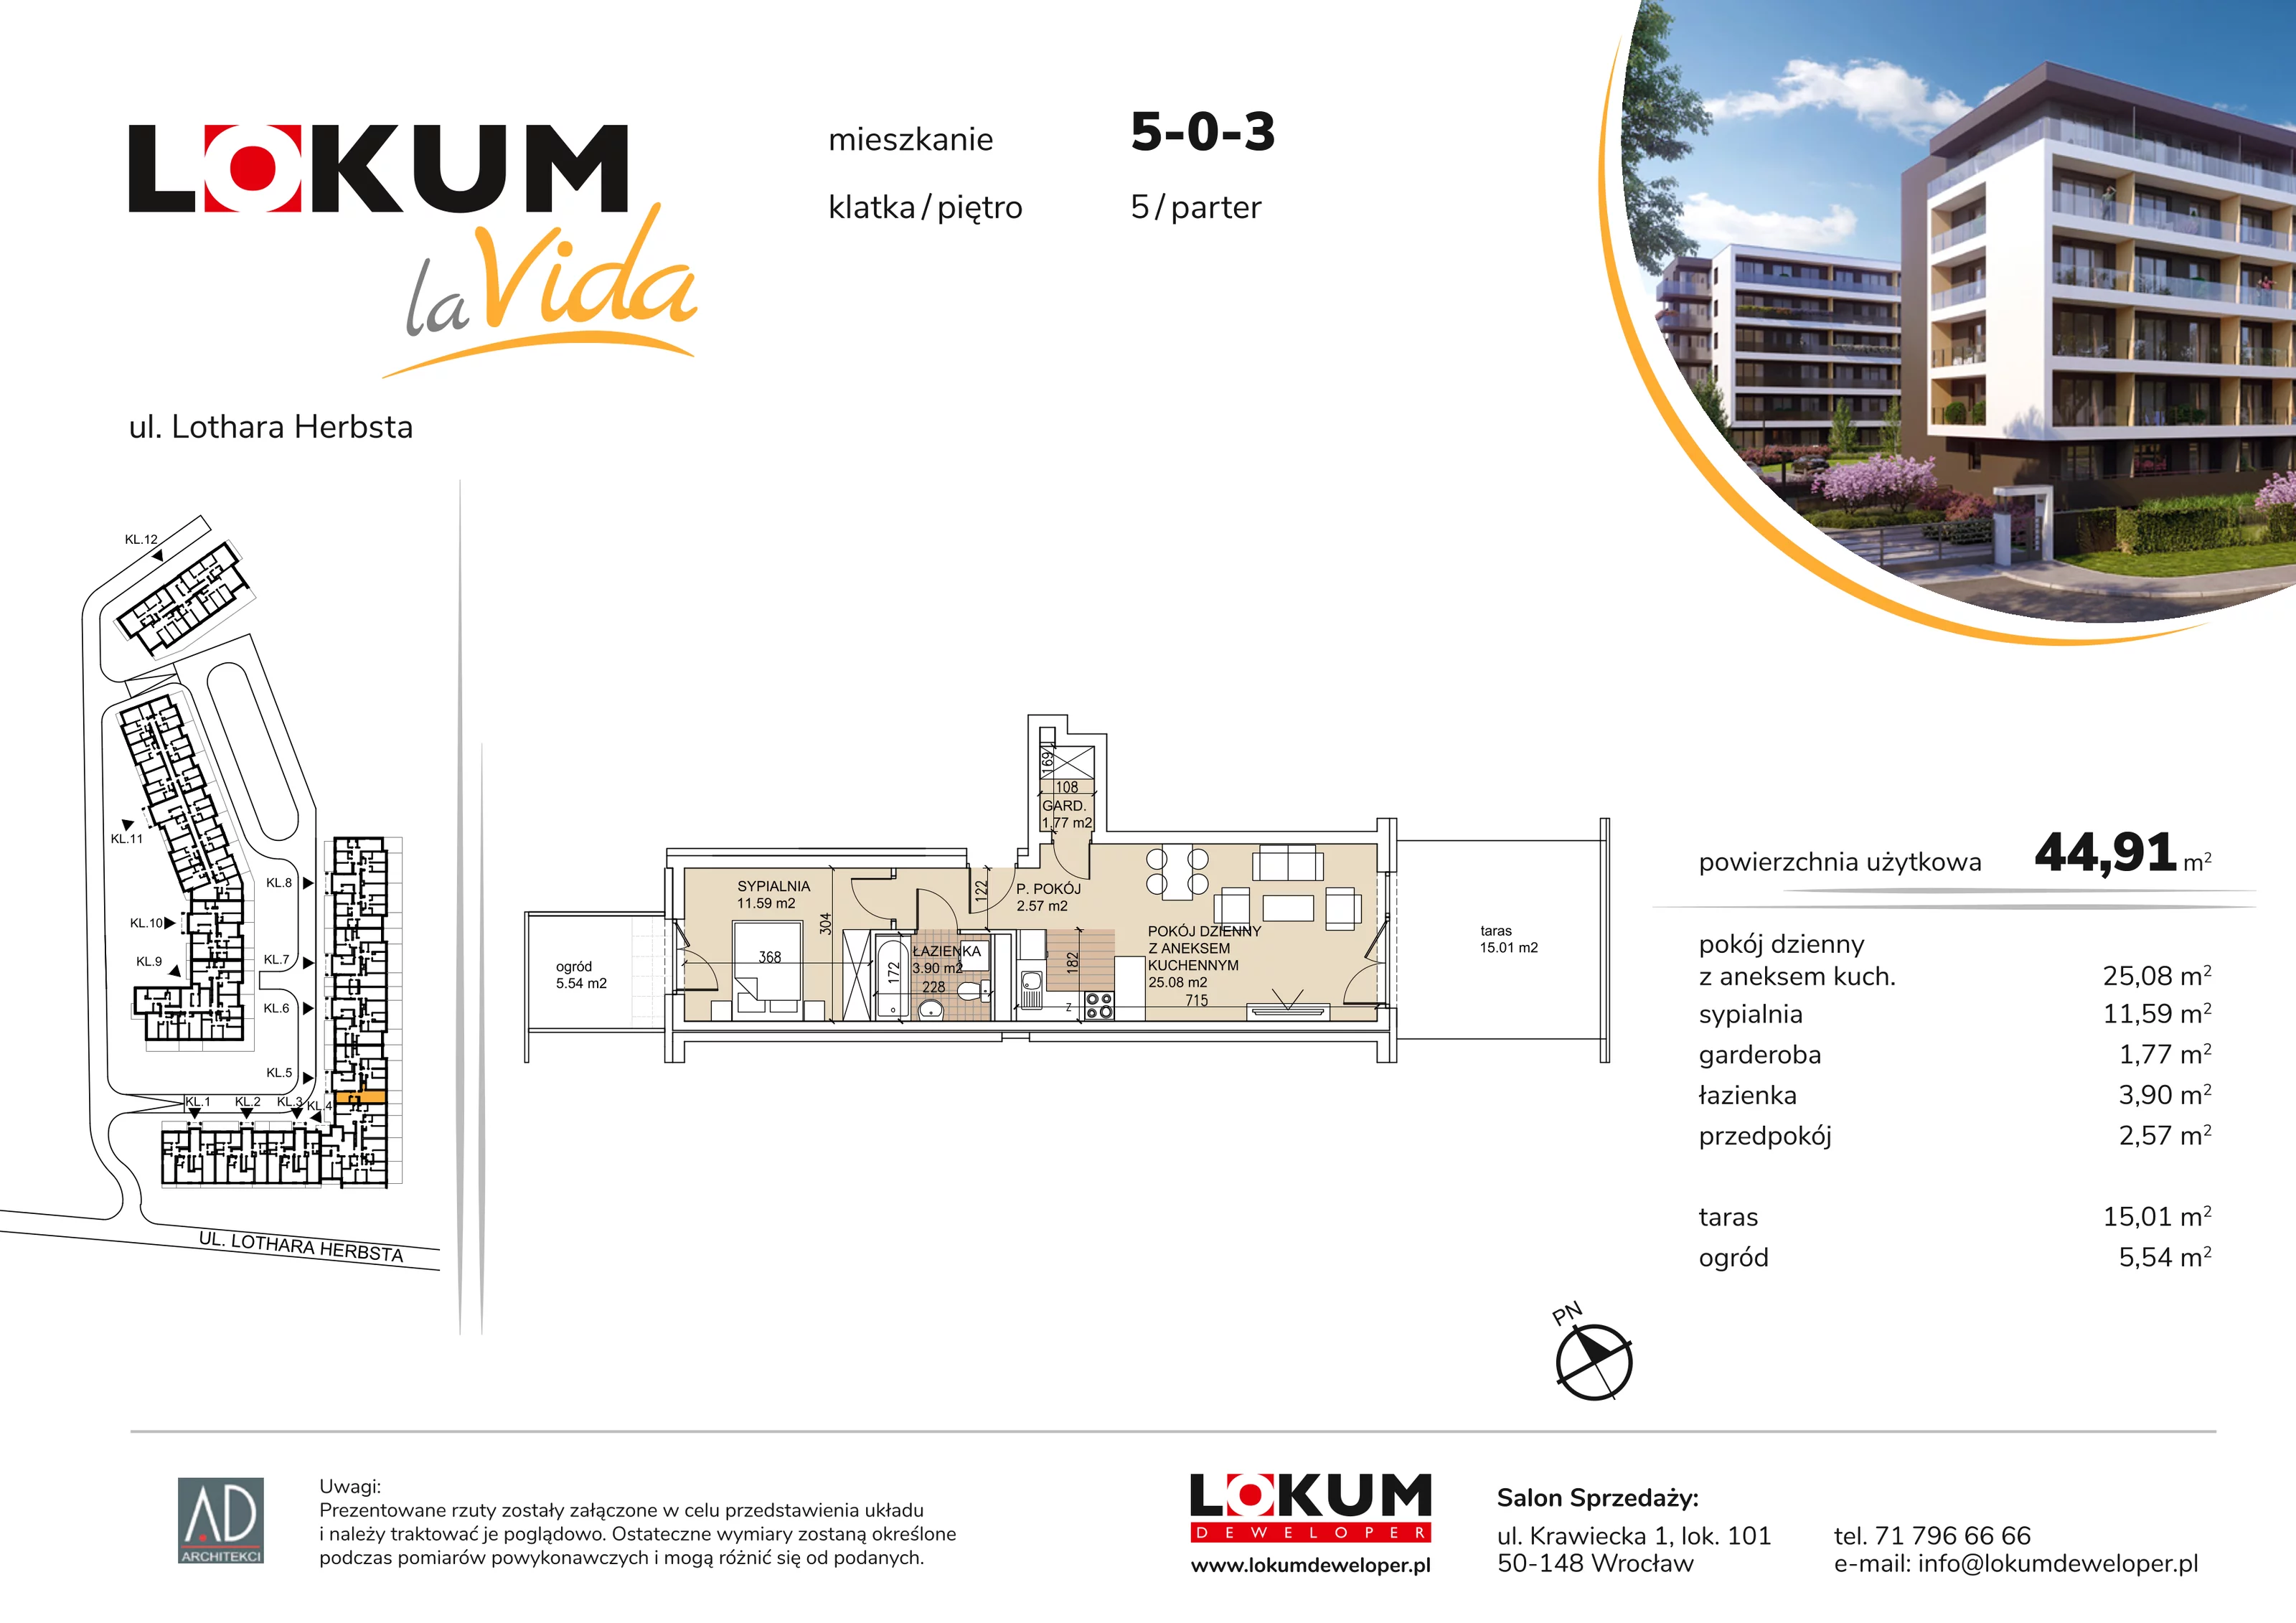 Mieszkanie 44,91 m², parter, oferta nr 5-0-3, Lokum la Vida, Wrocław, Sołtysowice, ul. Lothara Herbsta